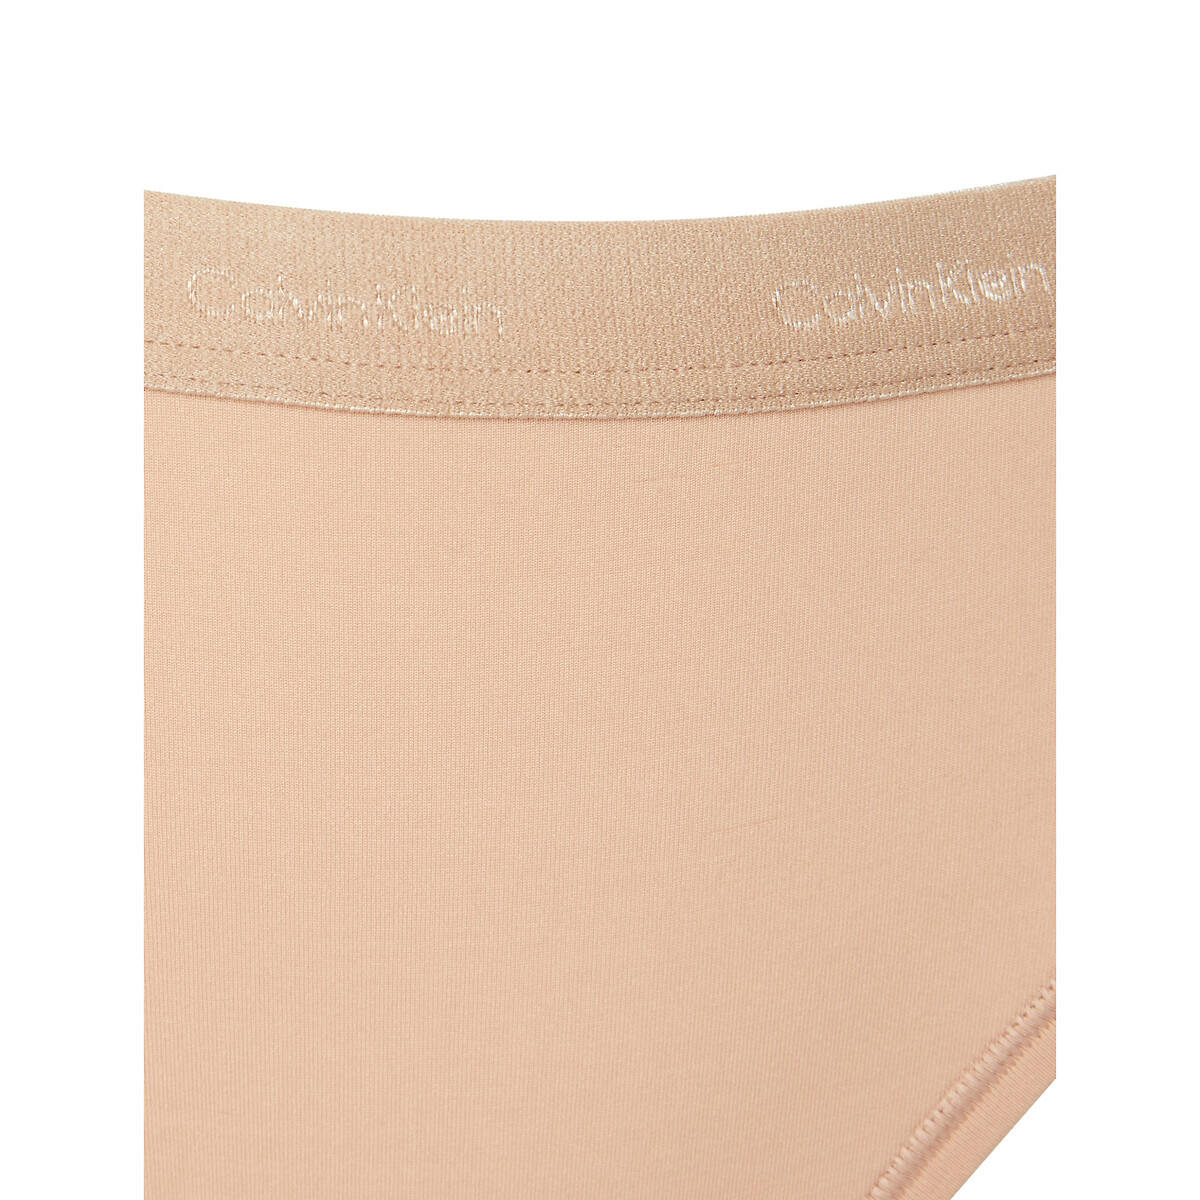 Form to body knickers, pink, Calvin Klein Underwear